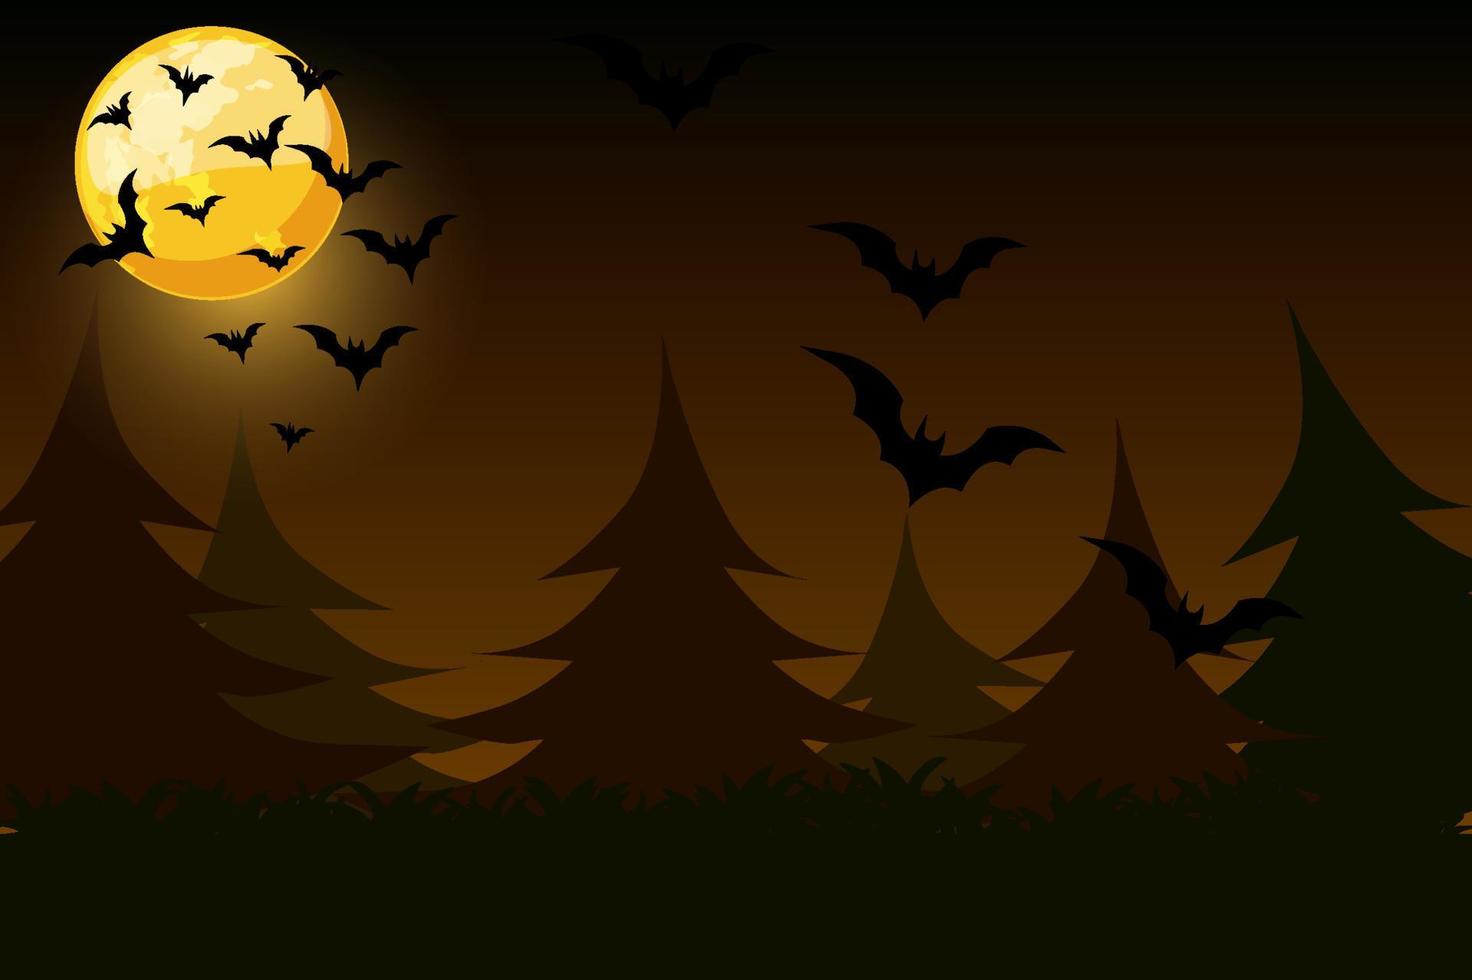 sfondo semplice notturno con luna e pipistrelli. illustrazione vettoriale di halloween spaventoso sfondo scuro.